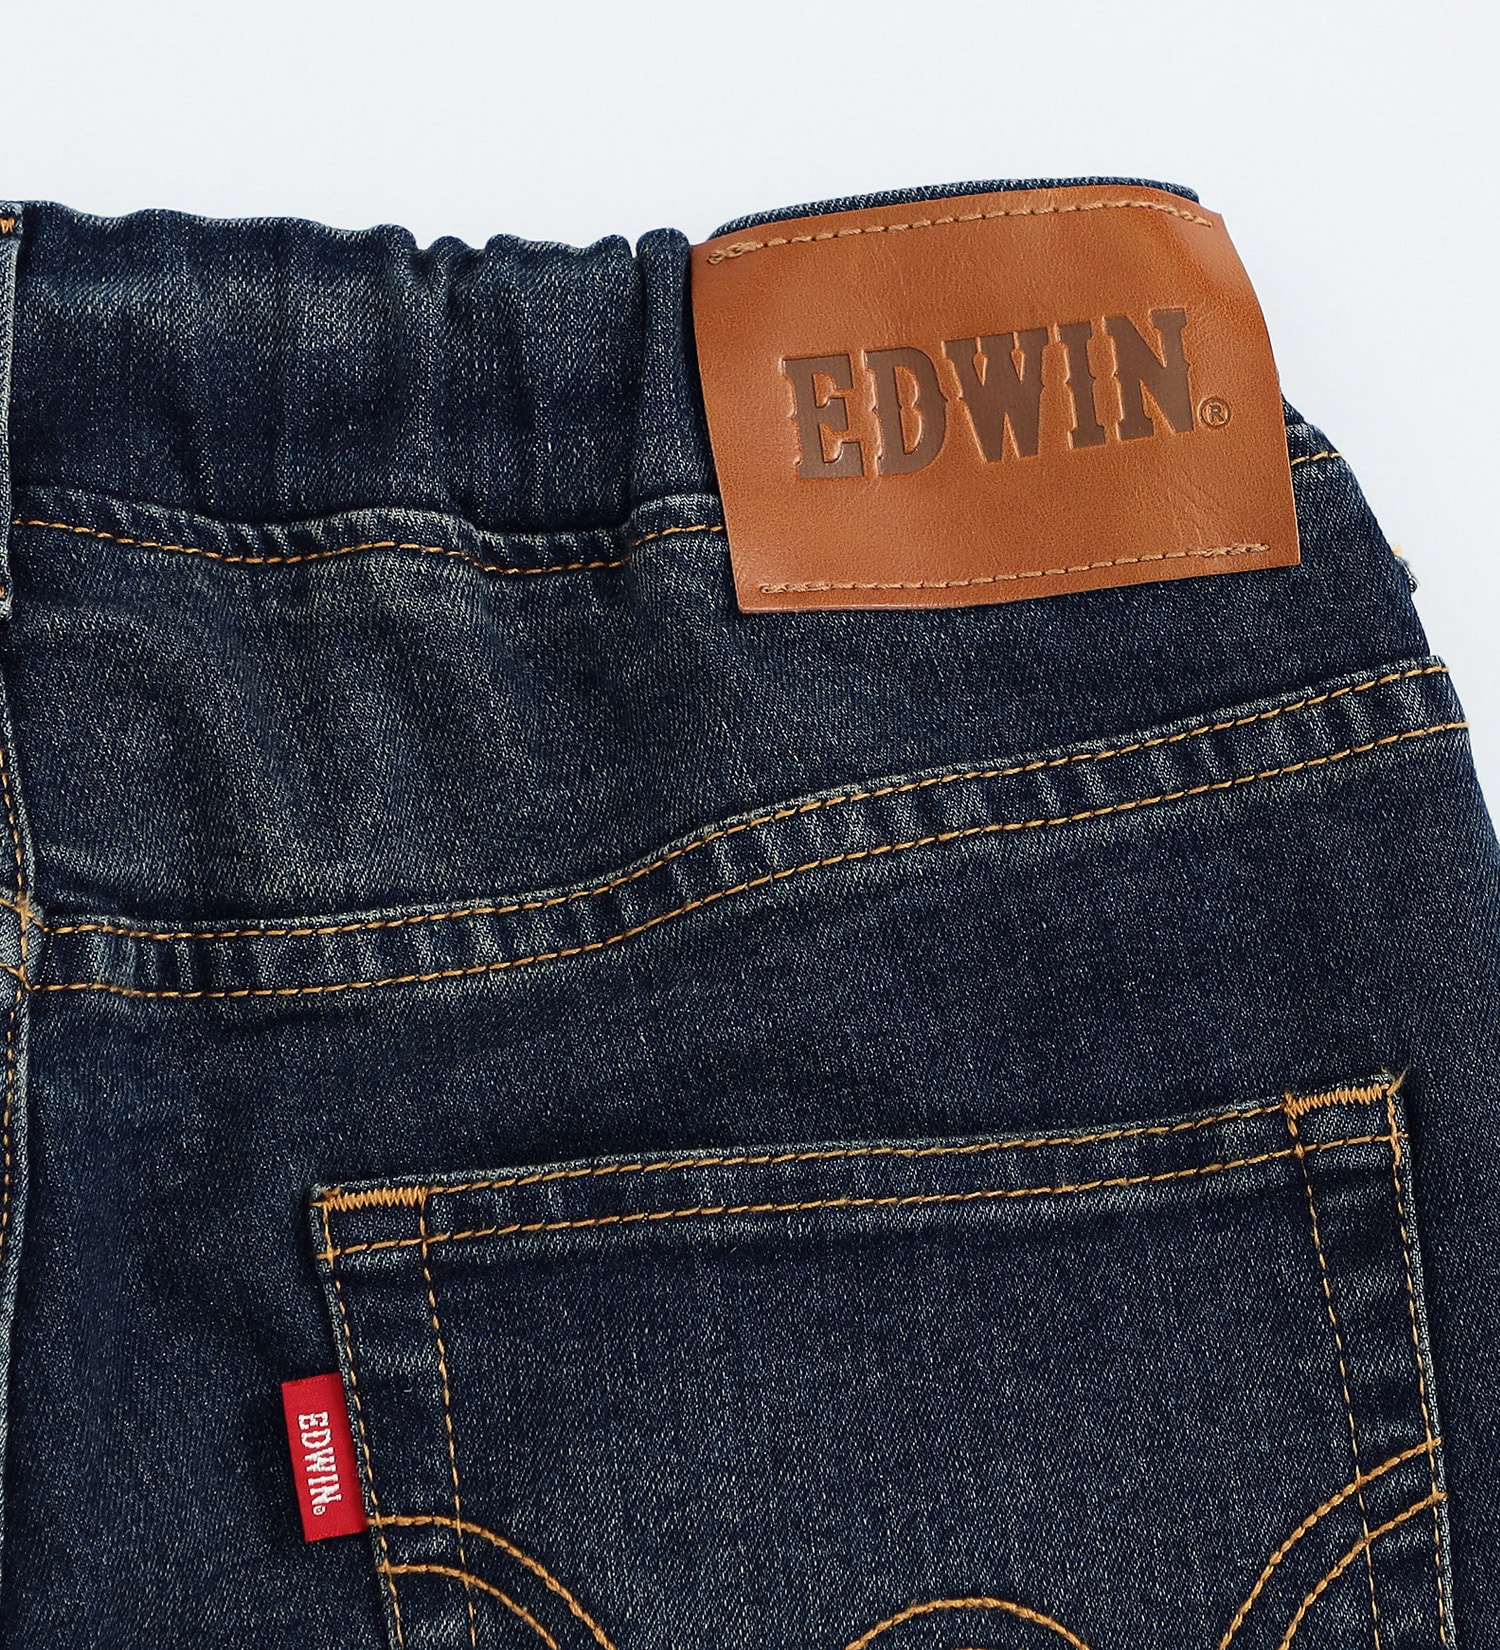 EDWIN(エドウイン)の【試着対象】キッズ ジュニアサイズ ベーシックショーツ【170cm】|パンツ/デニムパンツ/キッズ|濃色ブルー